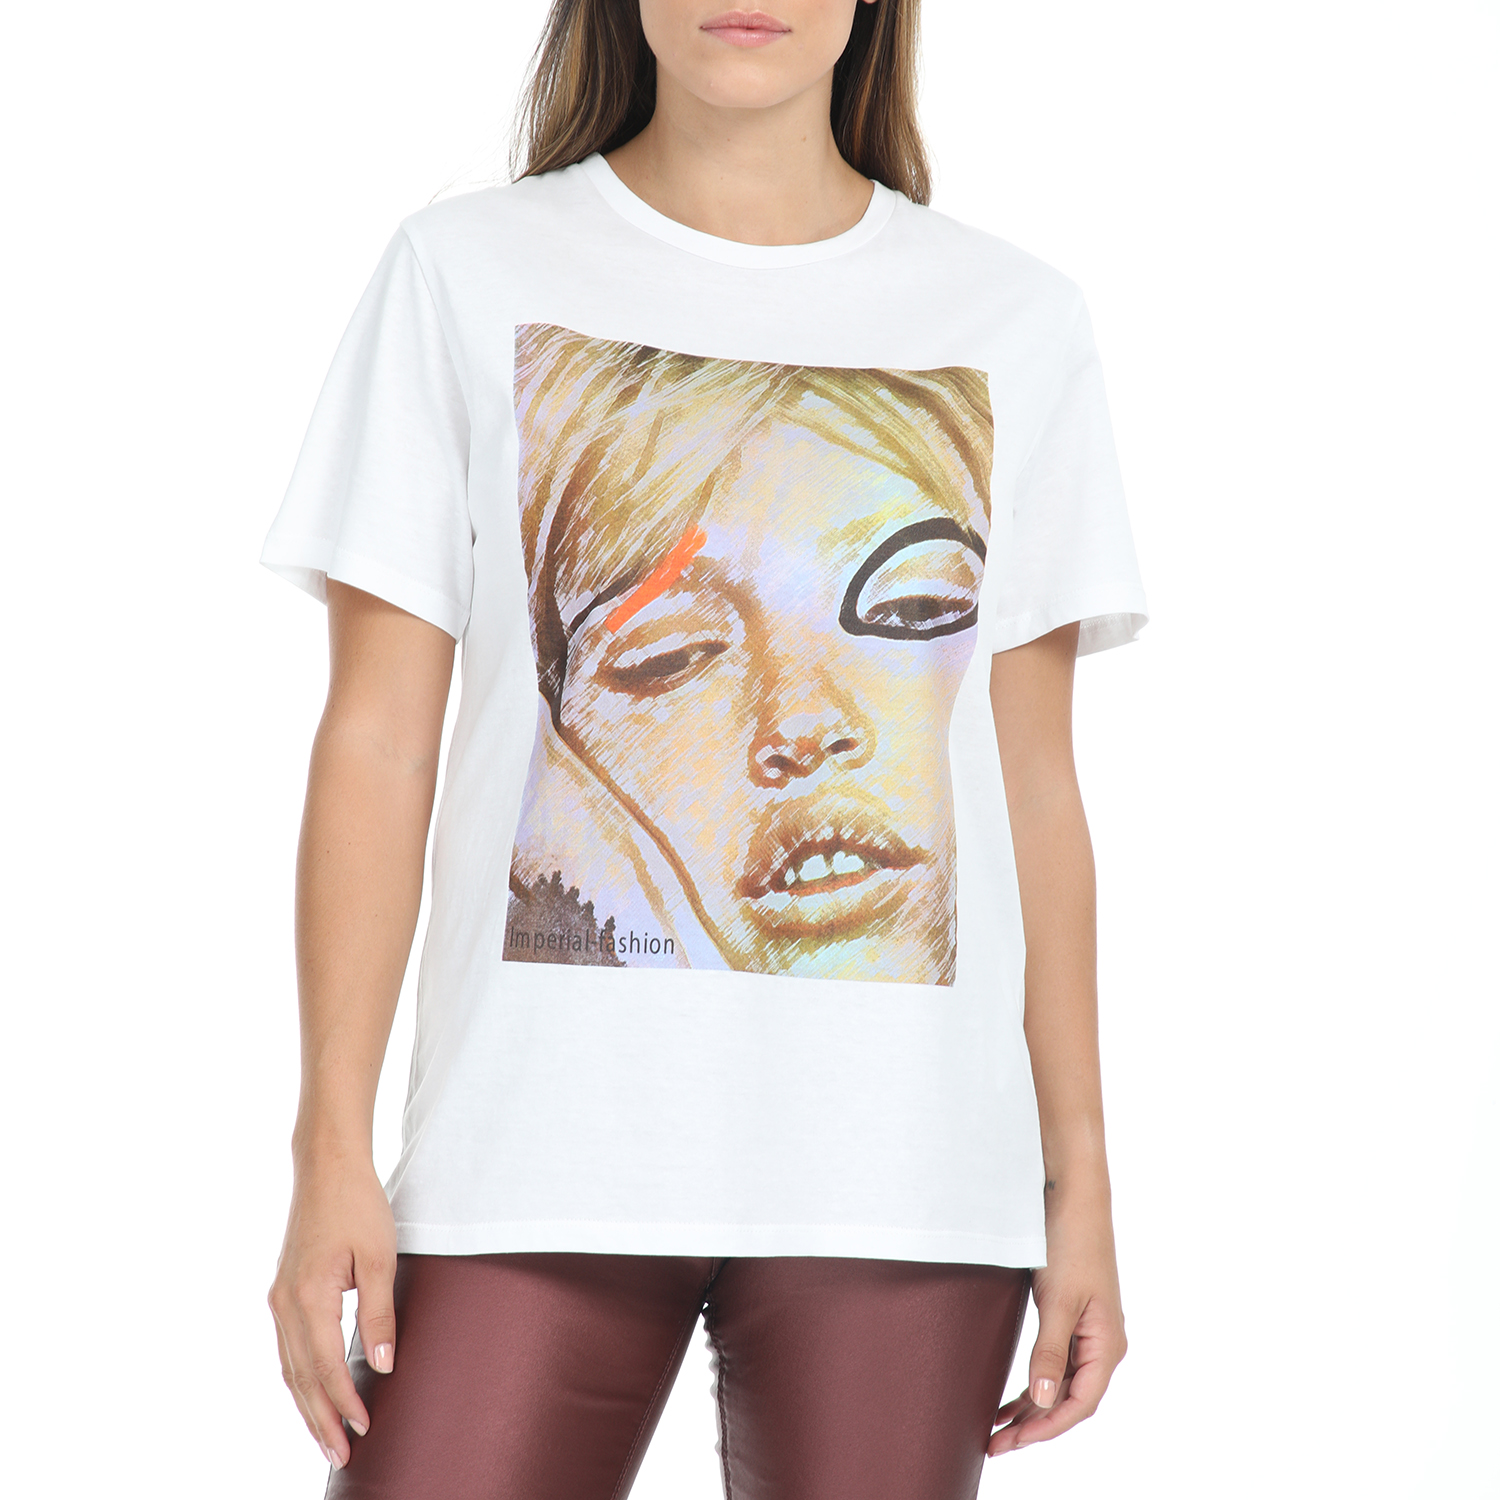 Γυναικεία/Ρούχα/Μπλούζες/Κοντομάνικες IMPERIAL - Γυναικείο t-shirt IMPERIAL λευκό